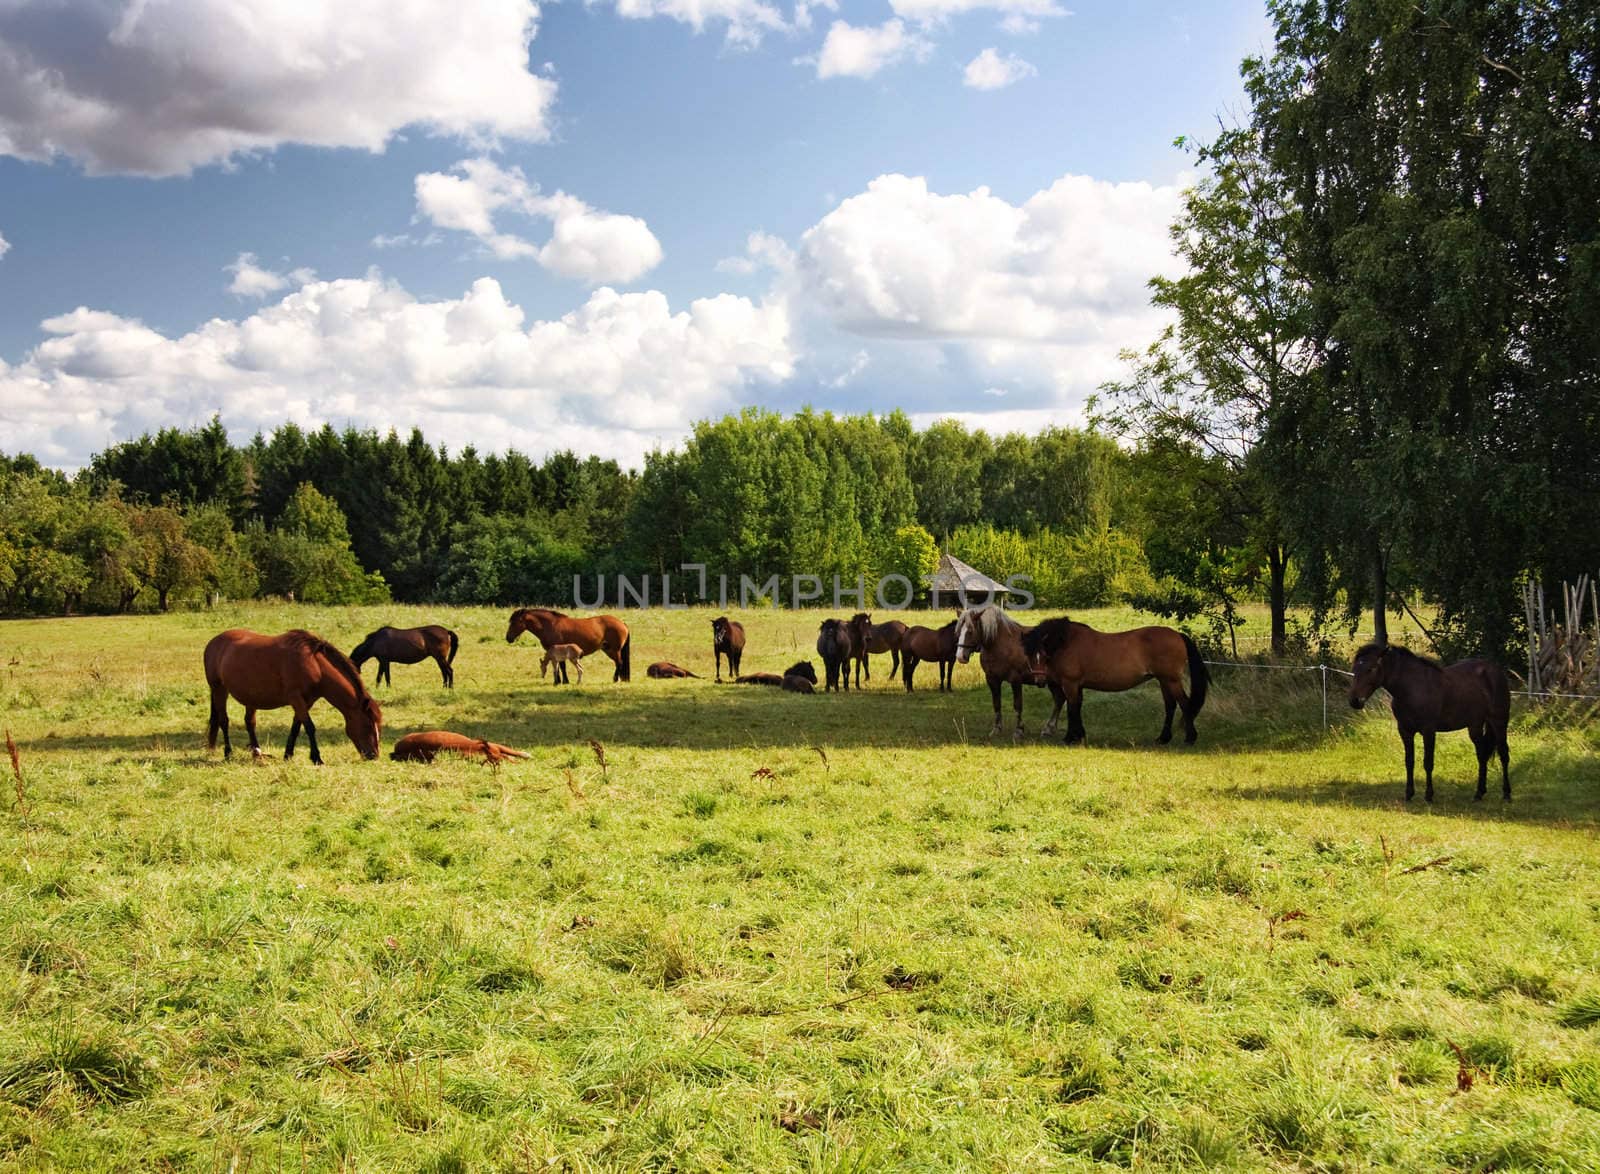 herd of horses in the field by aleksaskv